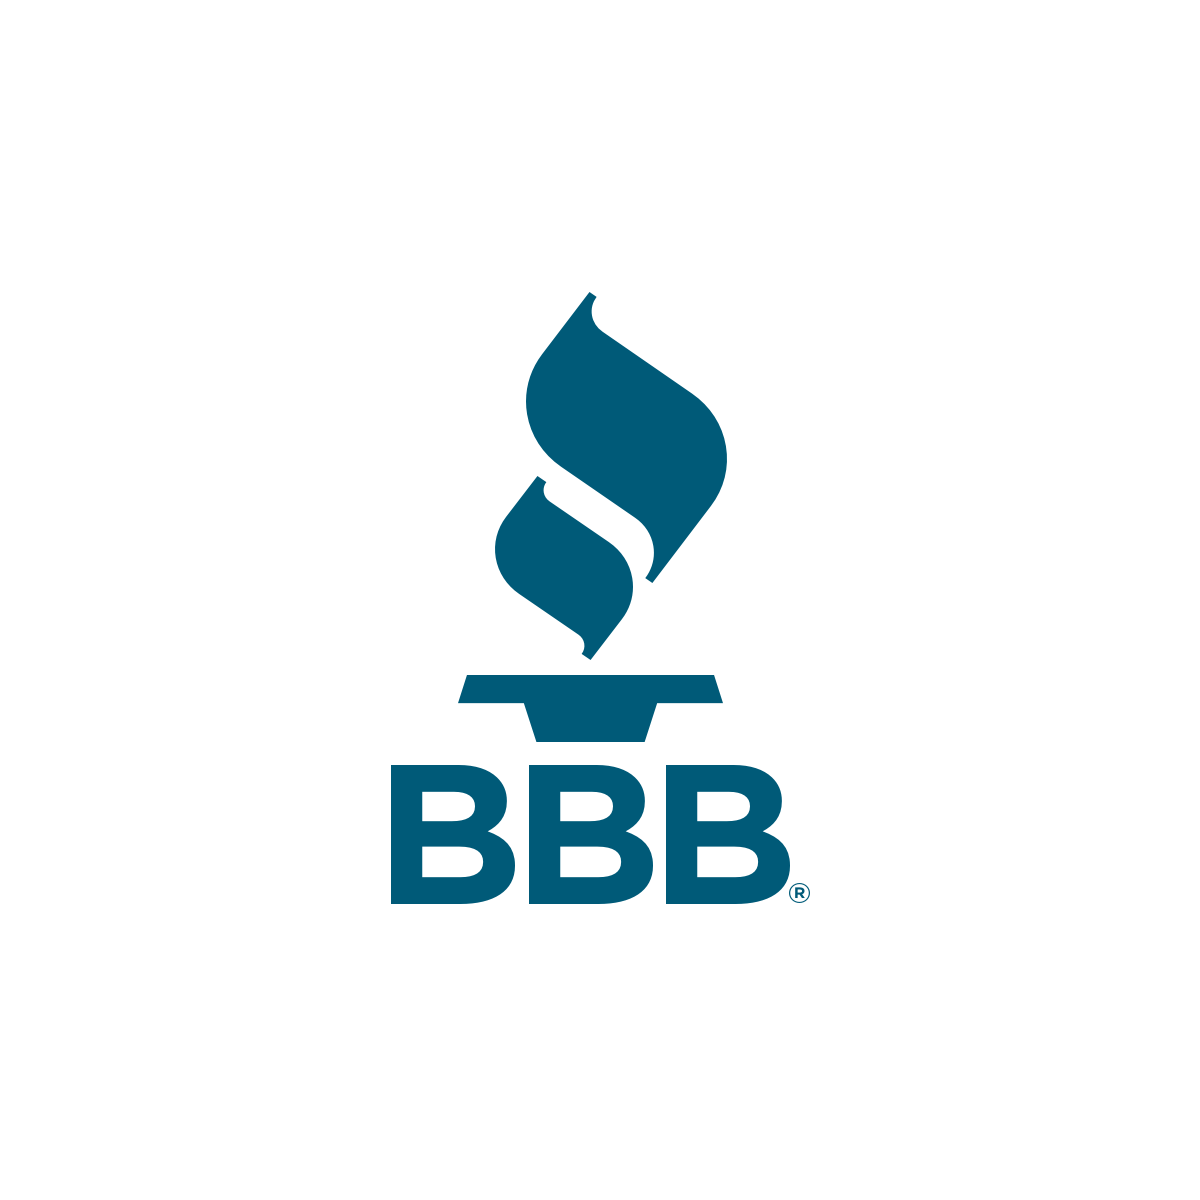 Better Business Bureau of West Florida